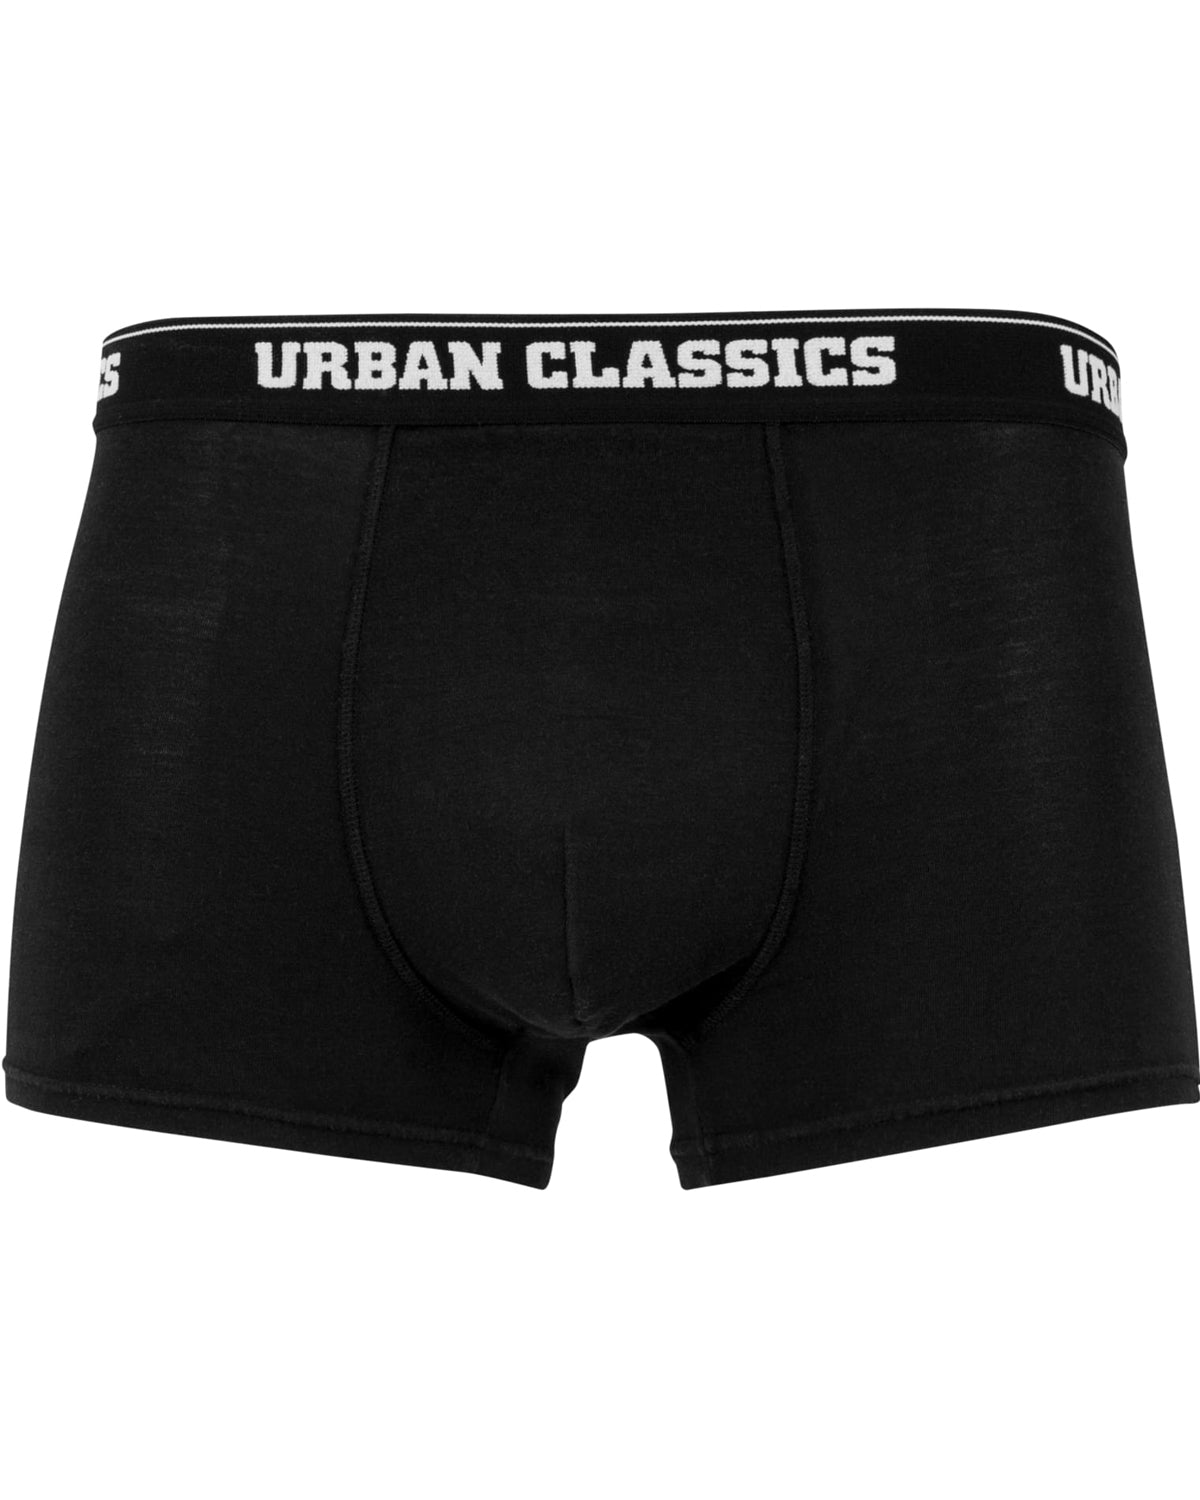 Urban Classics Urban bokserit 3-pack - Kuvio/Musta/Sininen